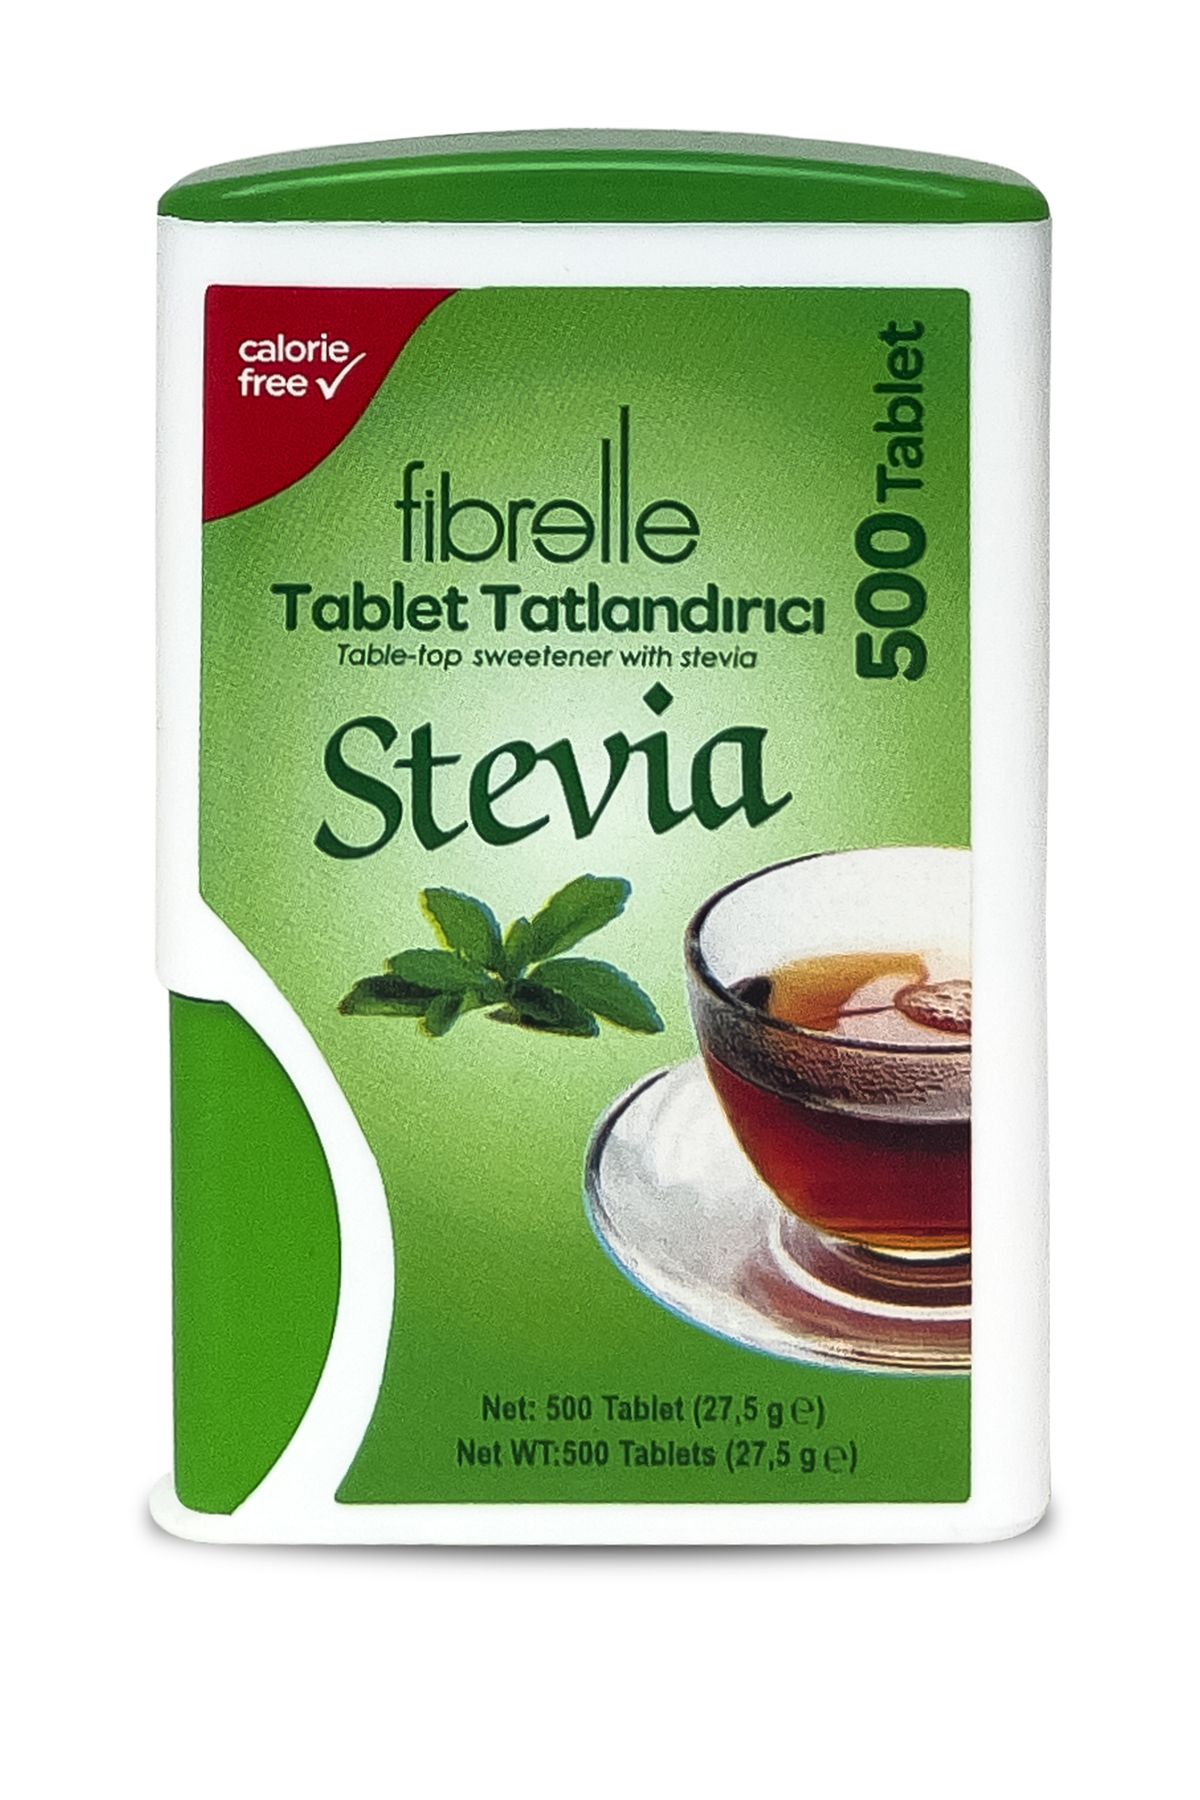 Fibrelle Stevia Tablet Tatlandıcı 500 Tablet